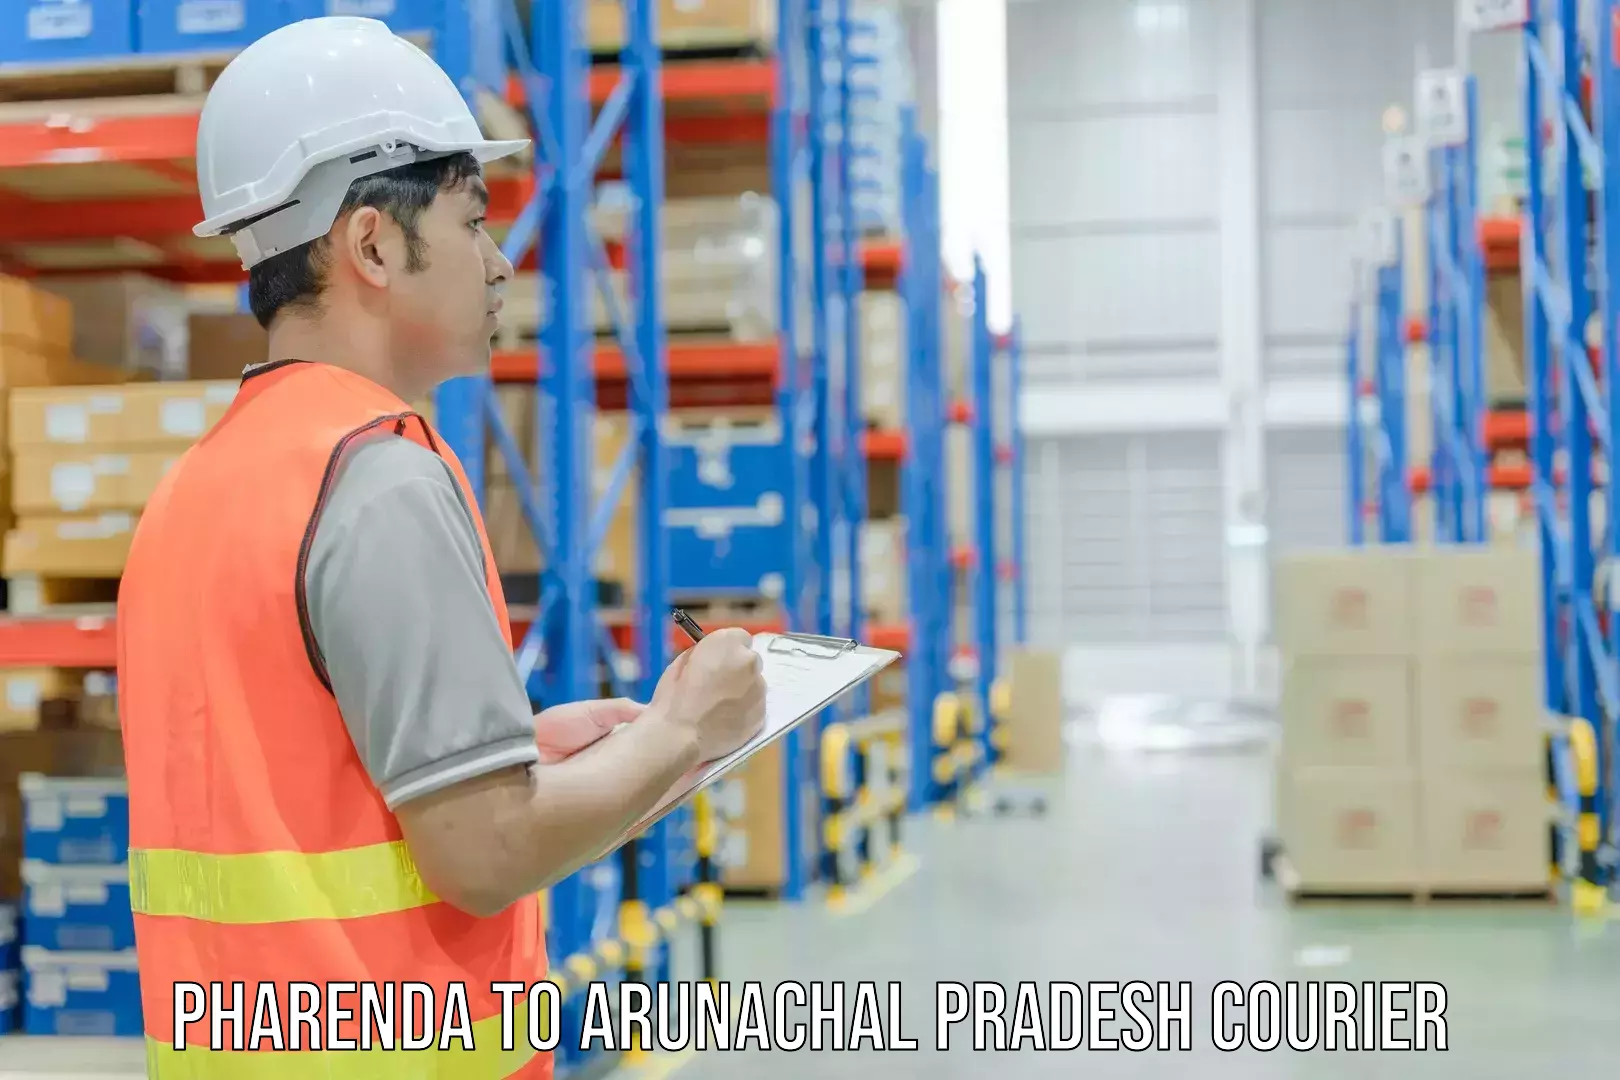 Global logistics network Pharenda to Arunachal Pradesh